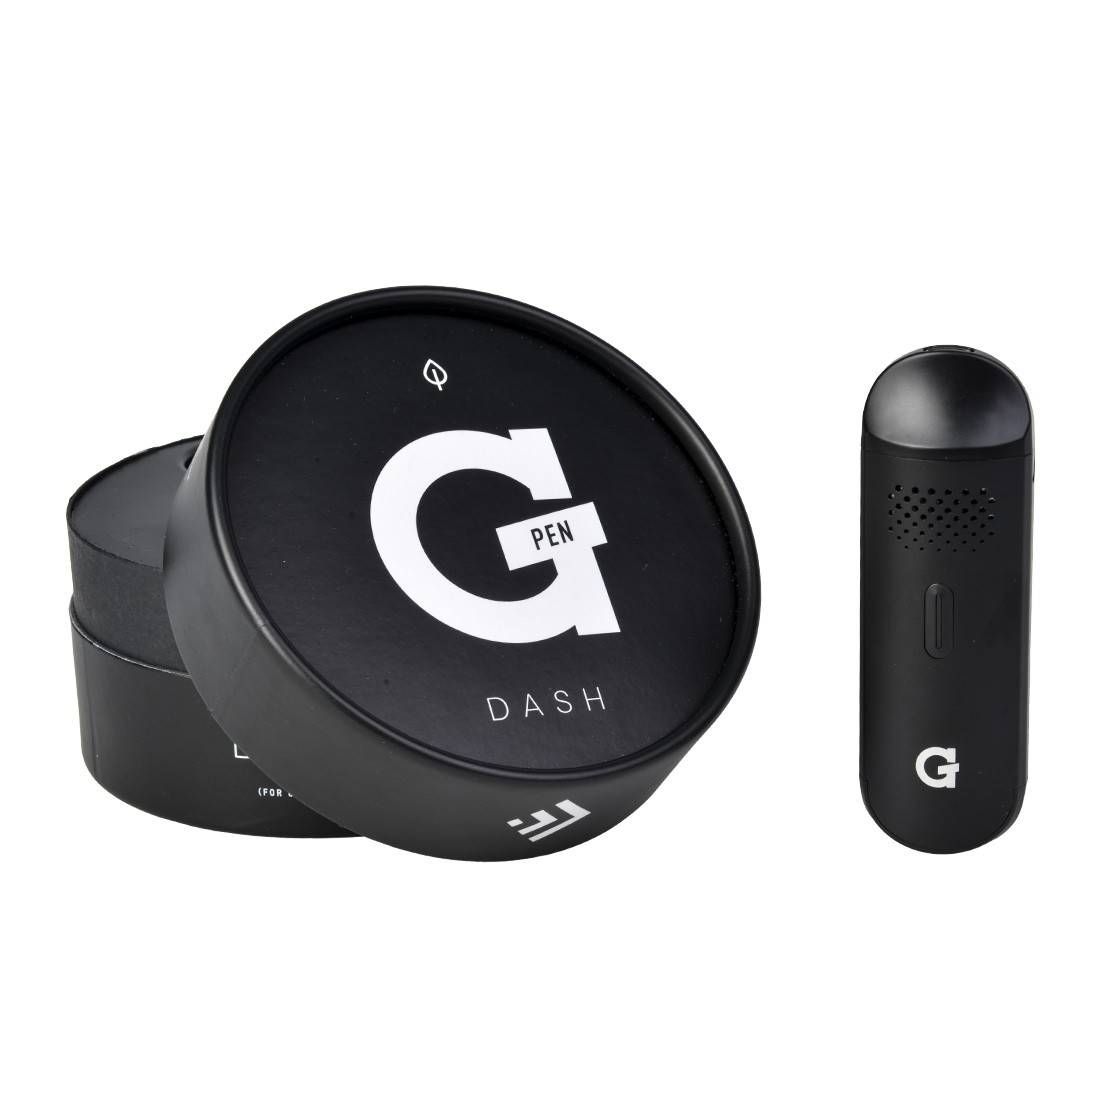 Vaporisateur portable G Pen Dash, disponible sur S Factory !